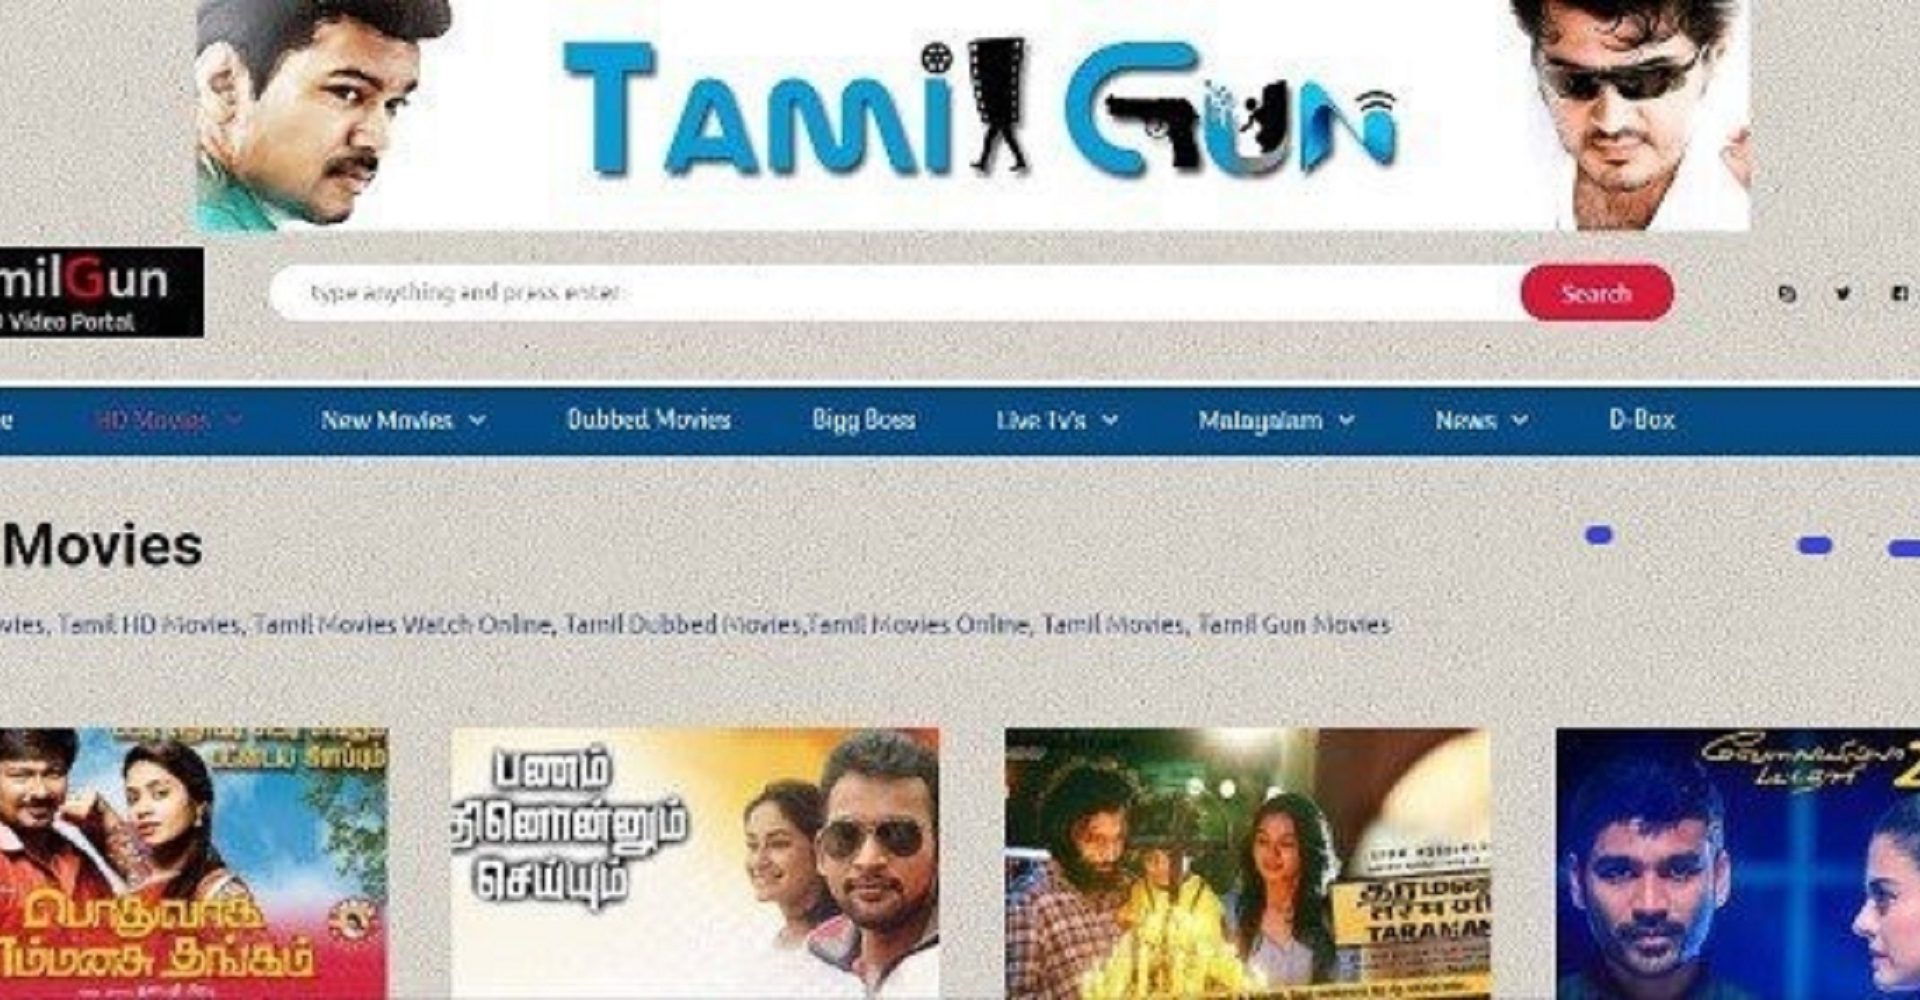 kodi movie online tamilgun